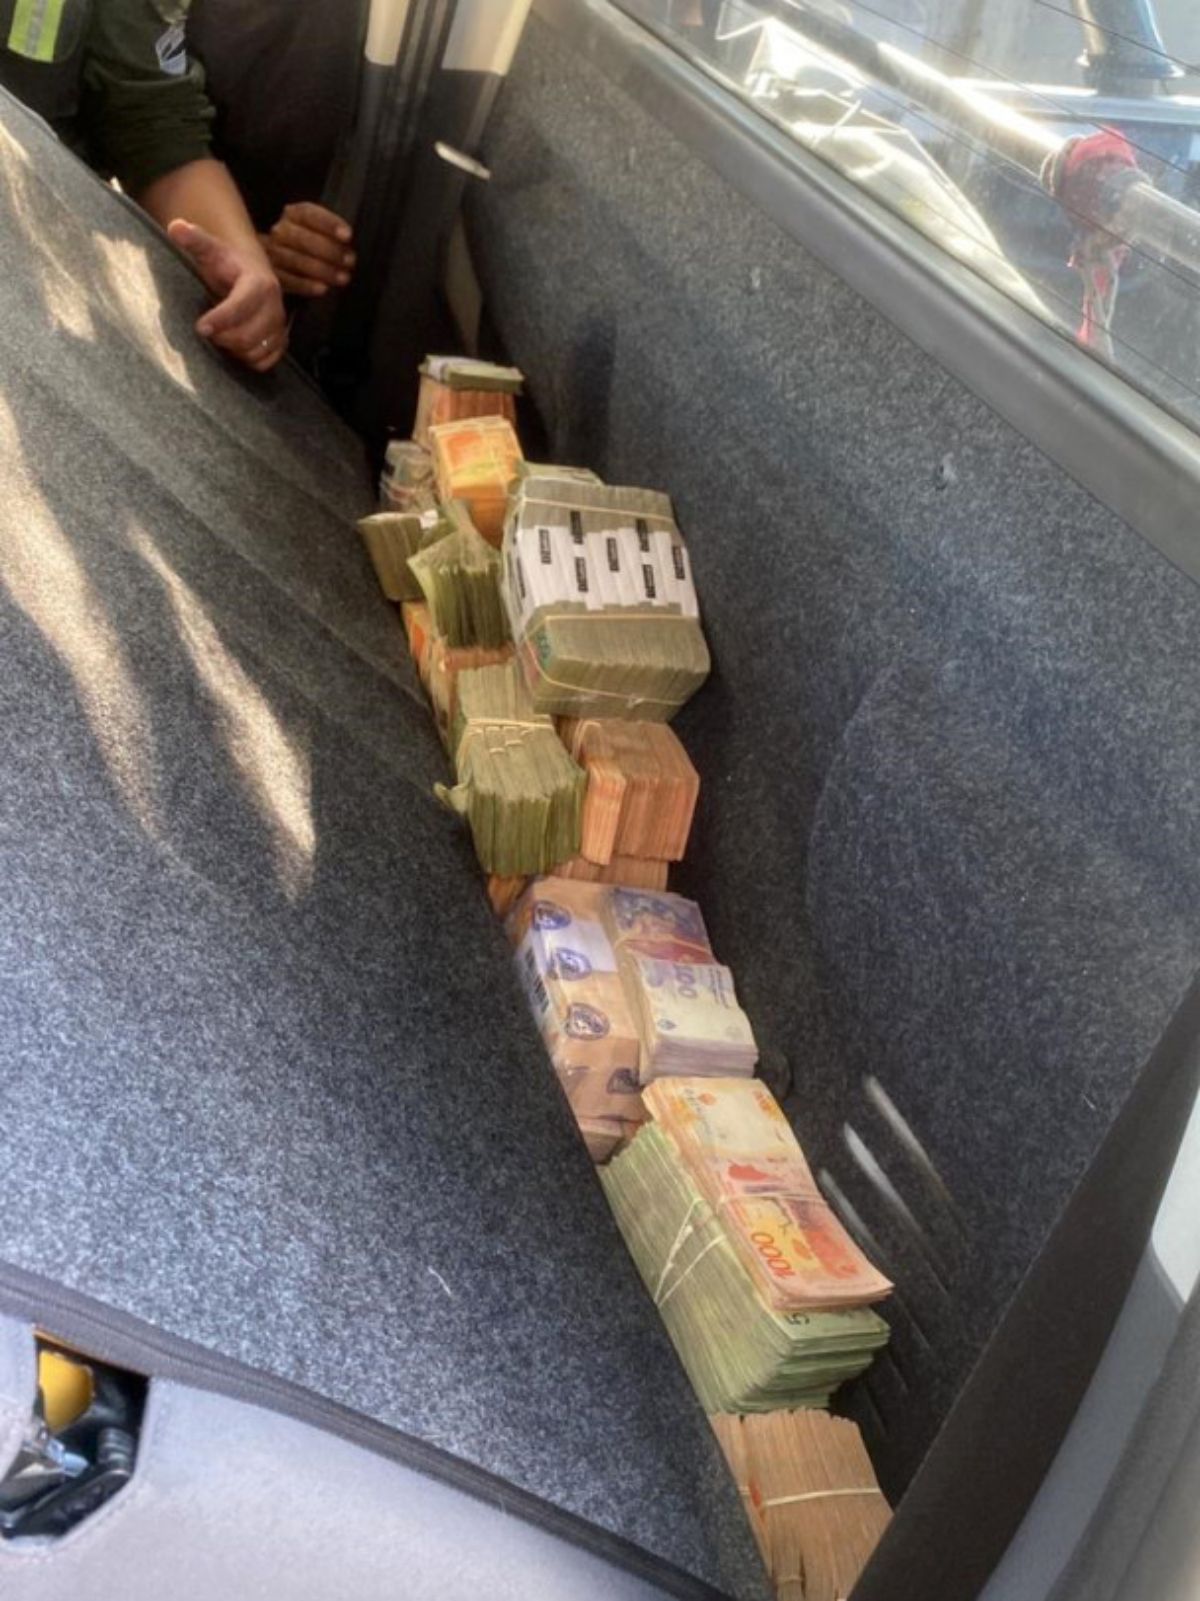 Parte del dinero transportado en Lavalle hacia Córdoba estaba detrás del asiento trasero del vehículo.